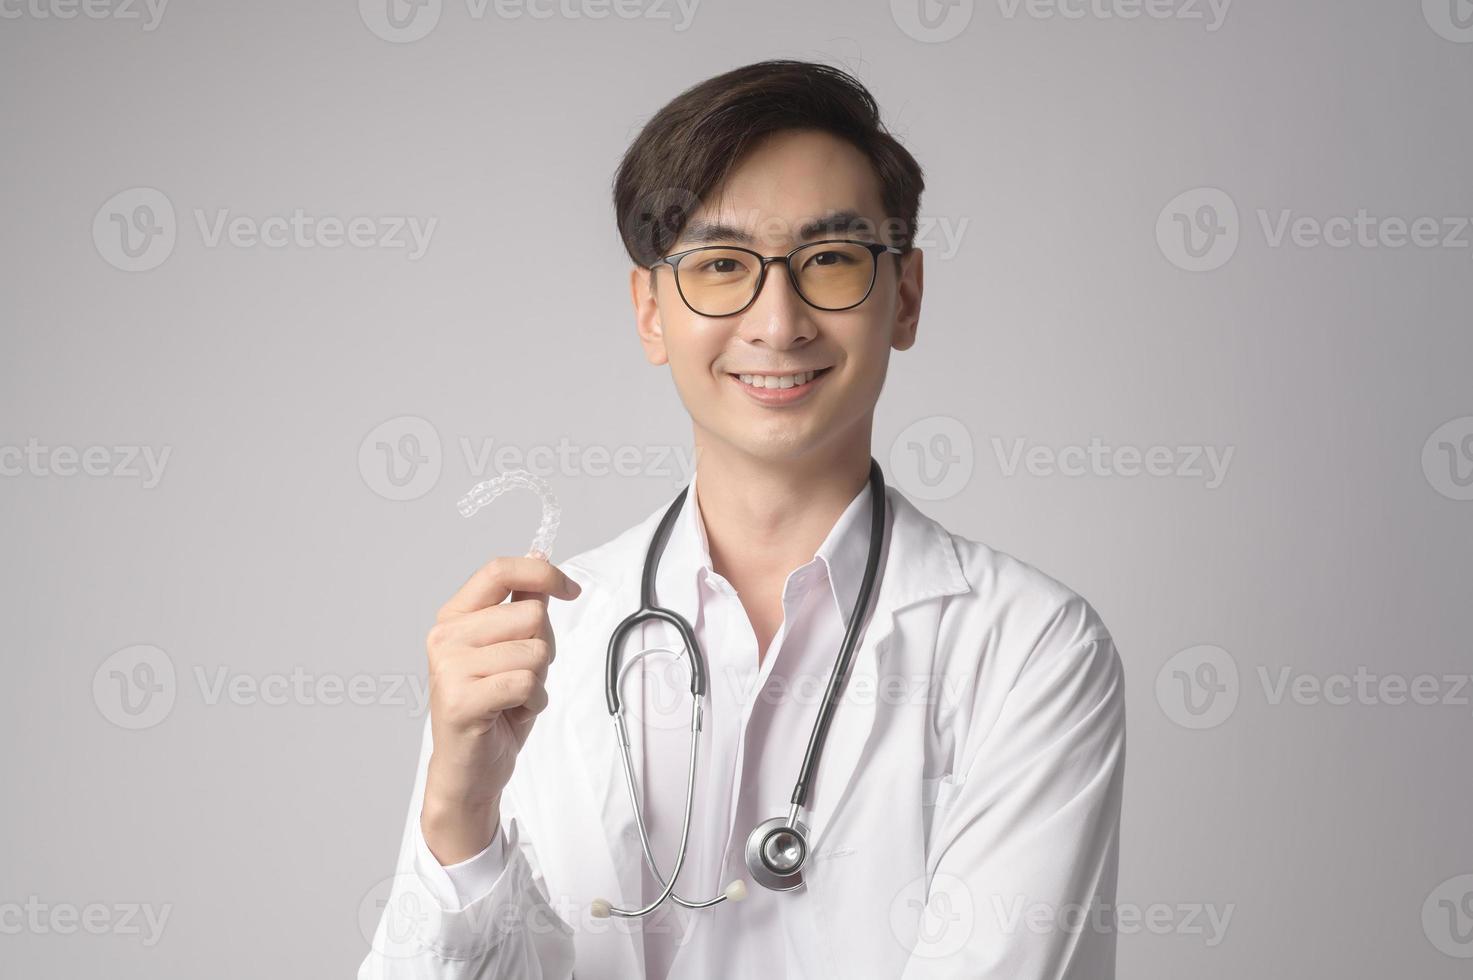 retrato de un médico de confianza masculino sobre un estudio de fondo blanco, concepto de tecnología médica y asistencia sanitaria. foto